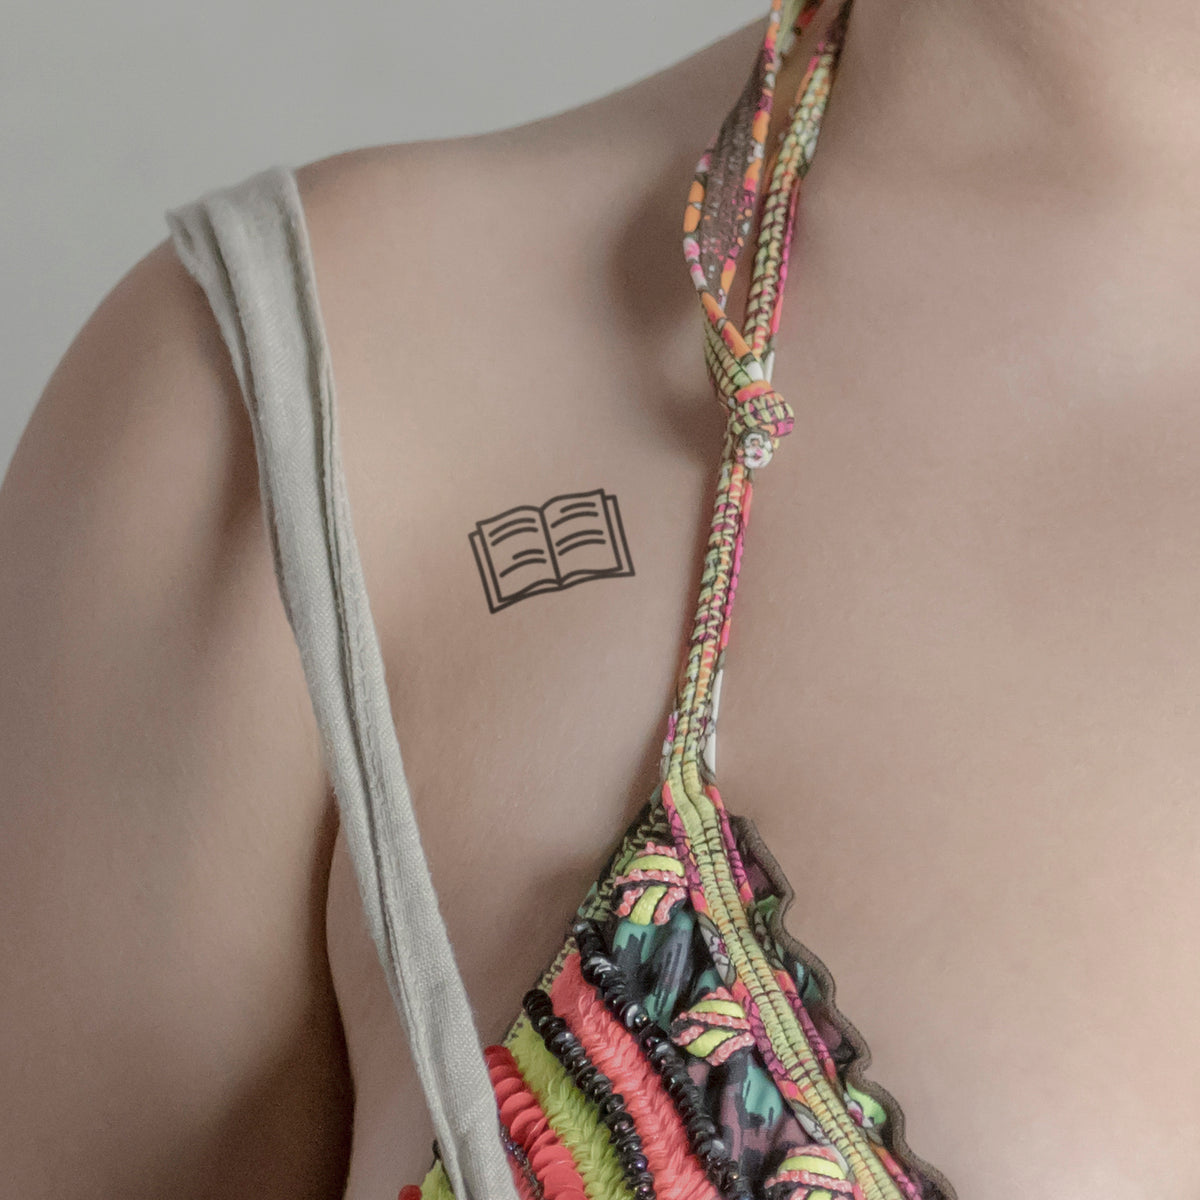 Buch mit Zeilen Tattoo von minink, der Marke für temporäre Tattoos.